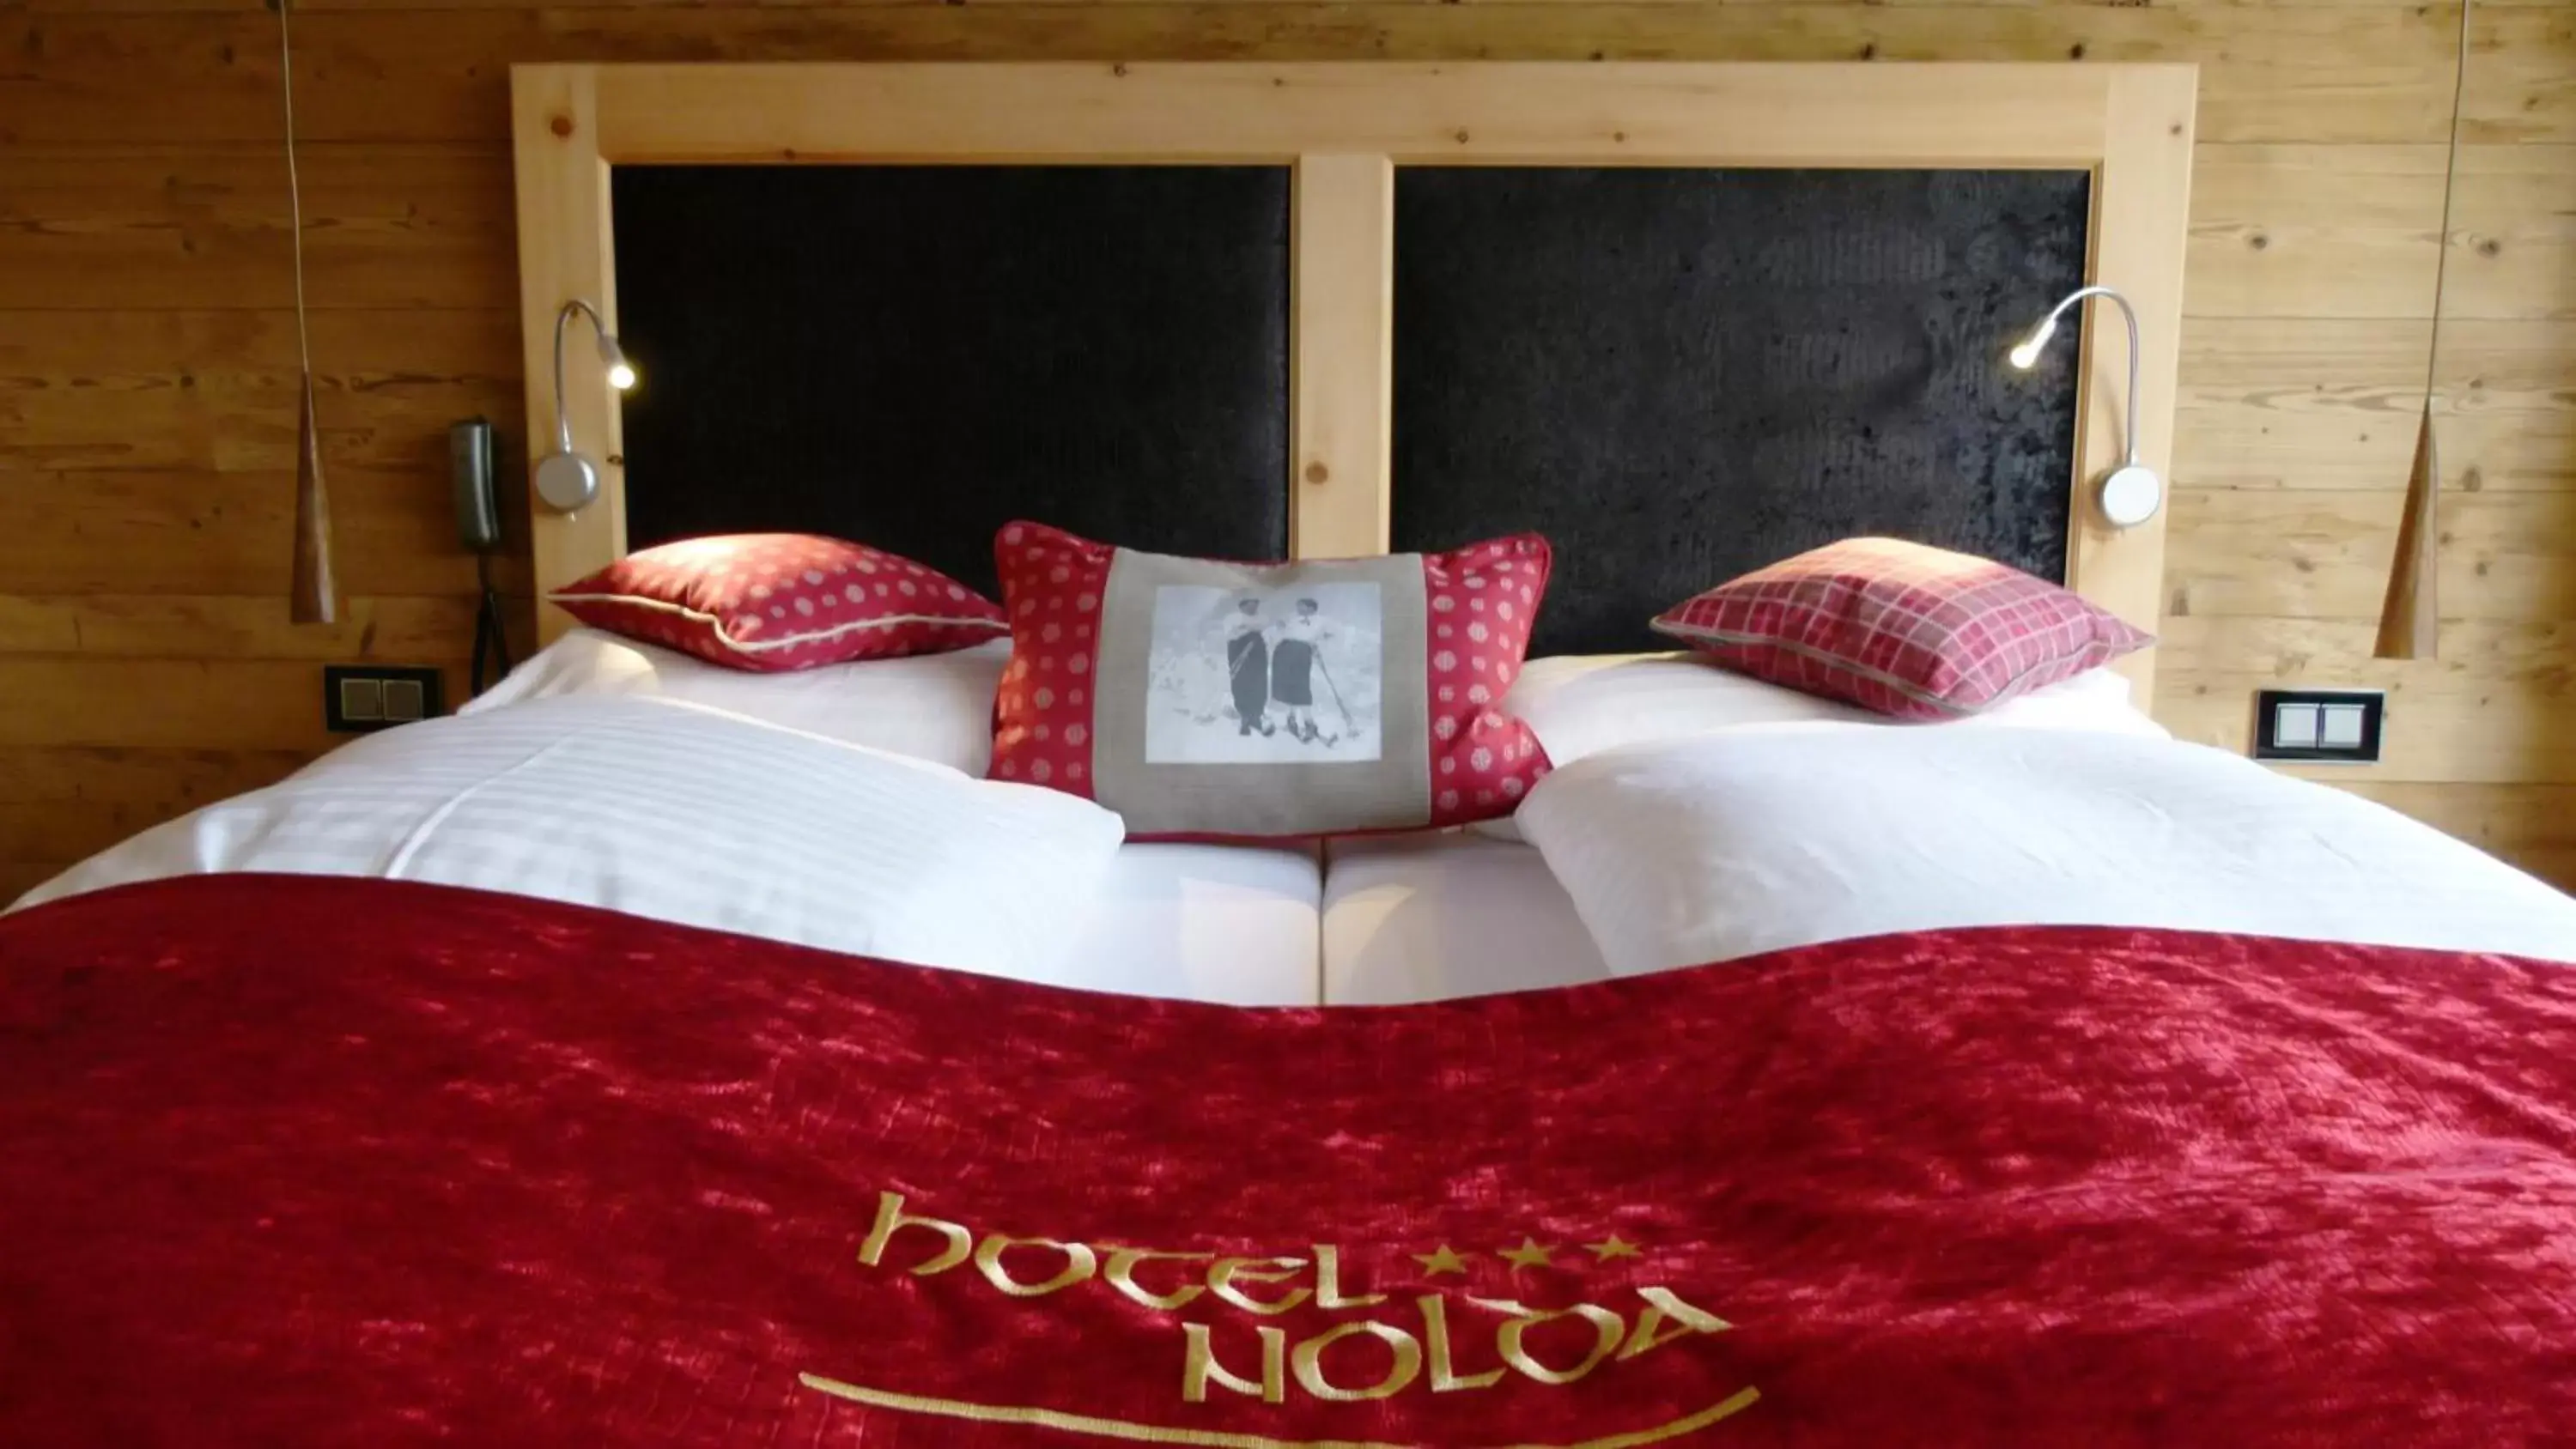 Bed in Hotel Nolda